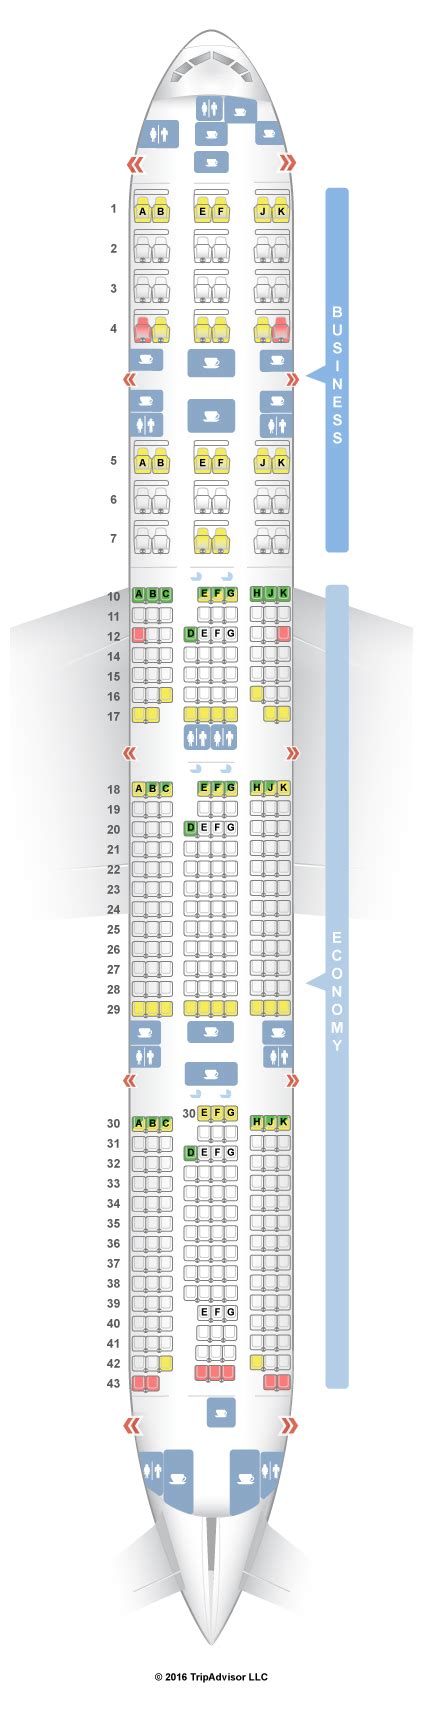 boeing 777-300er seating chart qatar airways